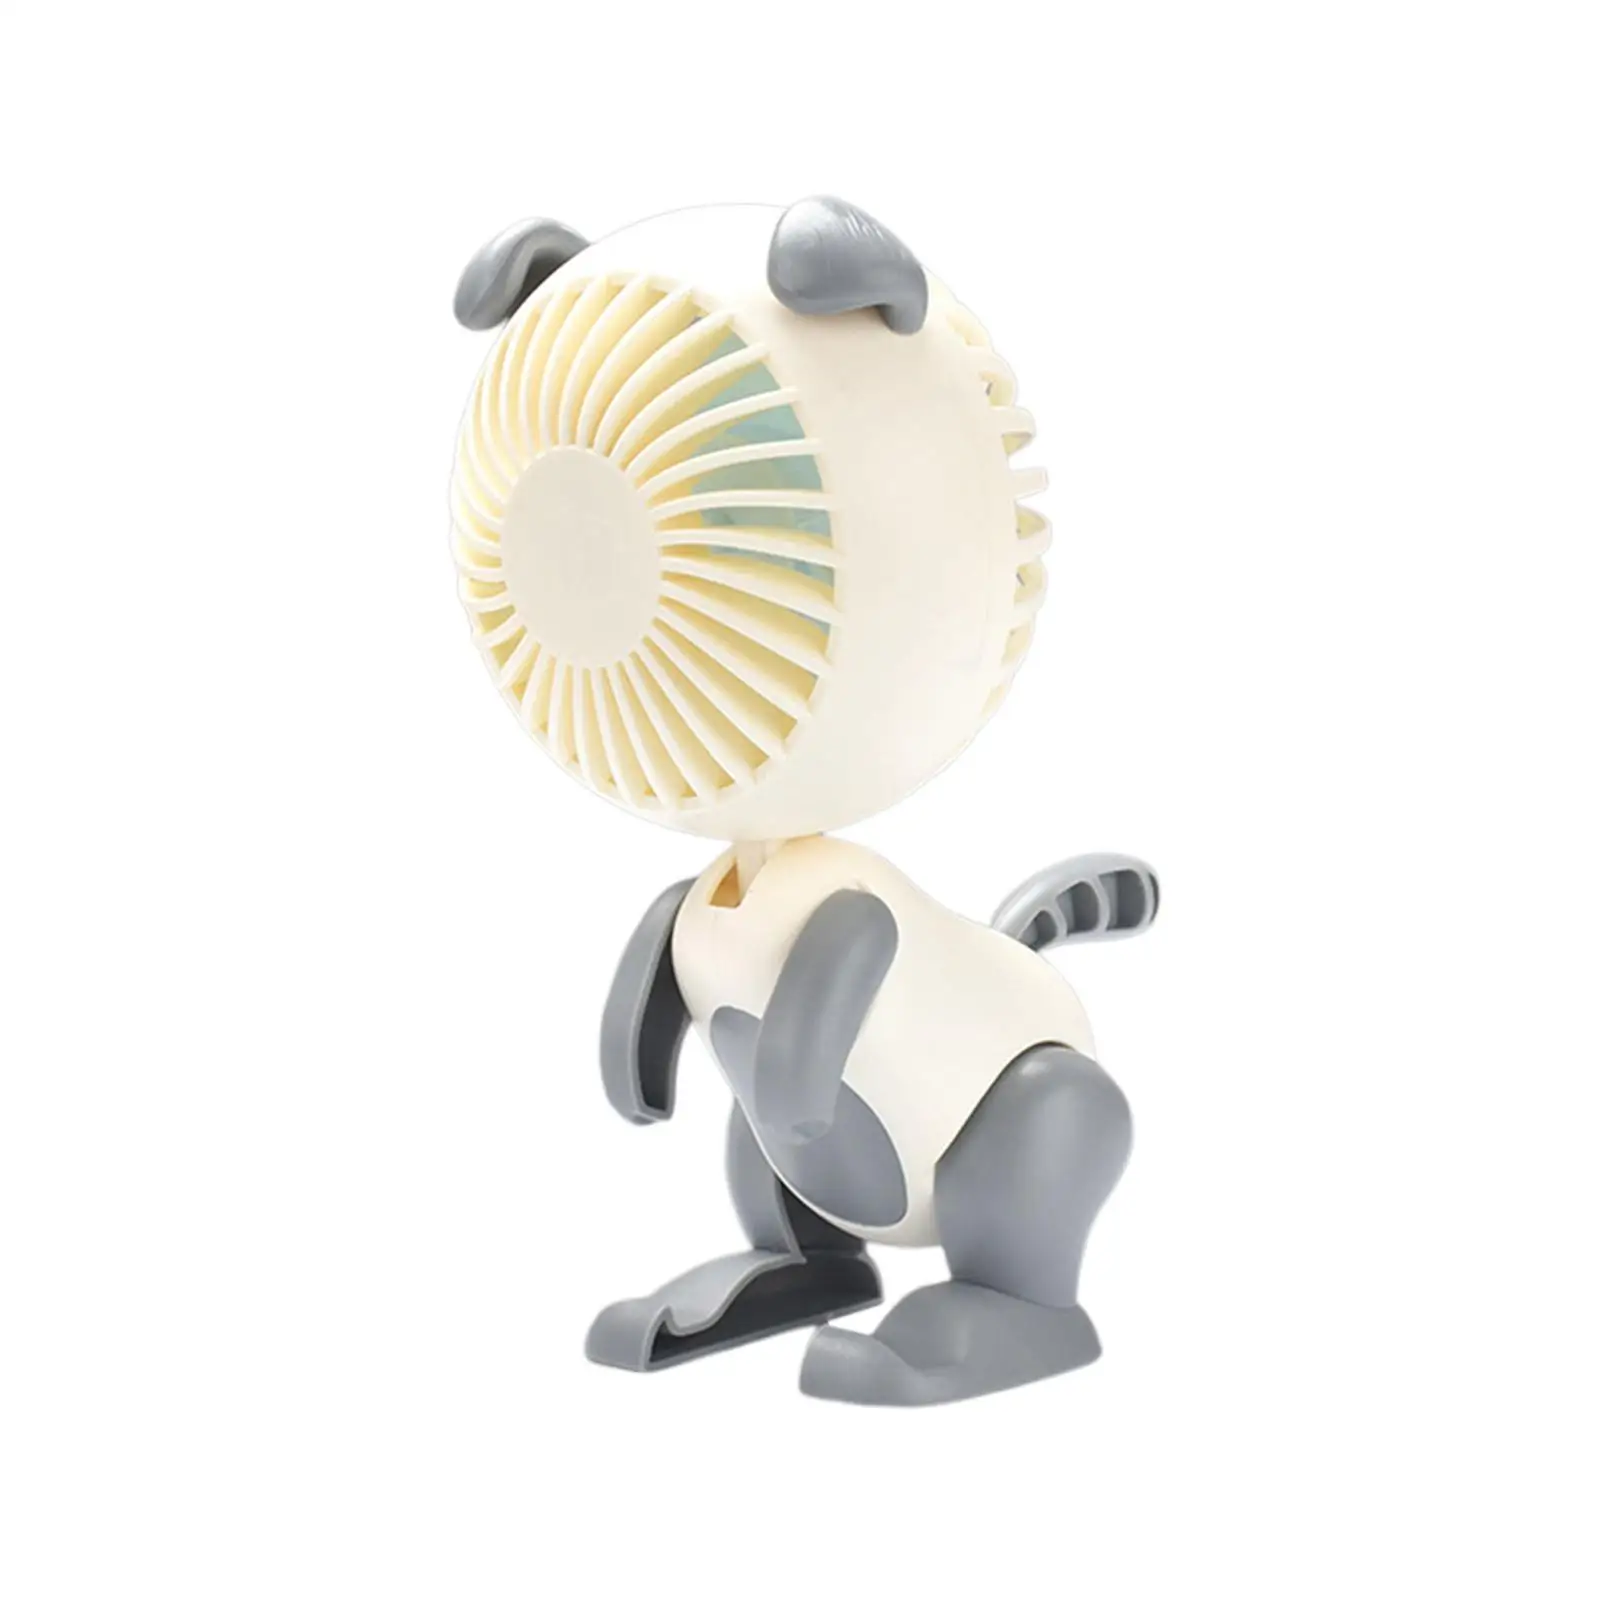 Puppy Desk Fan 3 Speeds Quiet Strong Personal Table Fan Mini Fan Portable for Office Traveling Kitchen